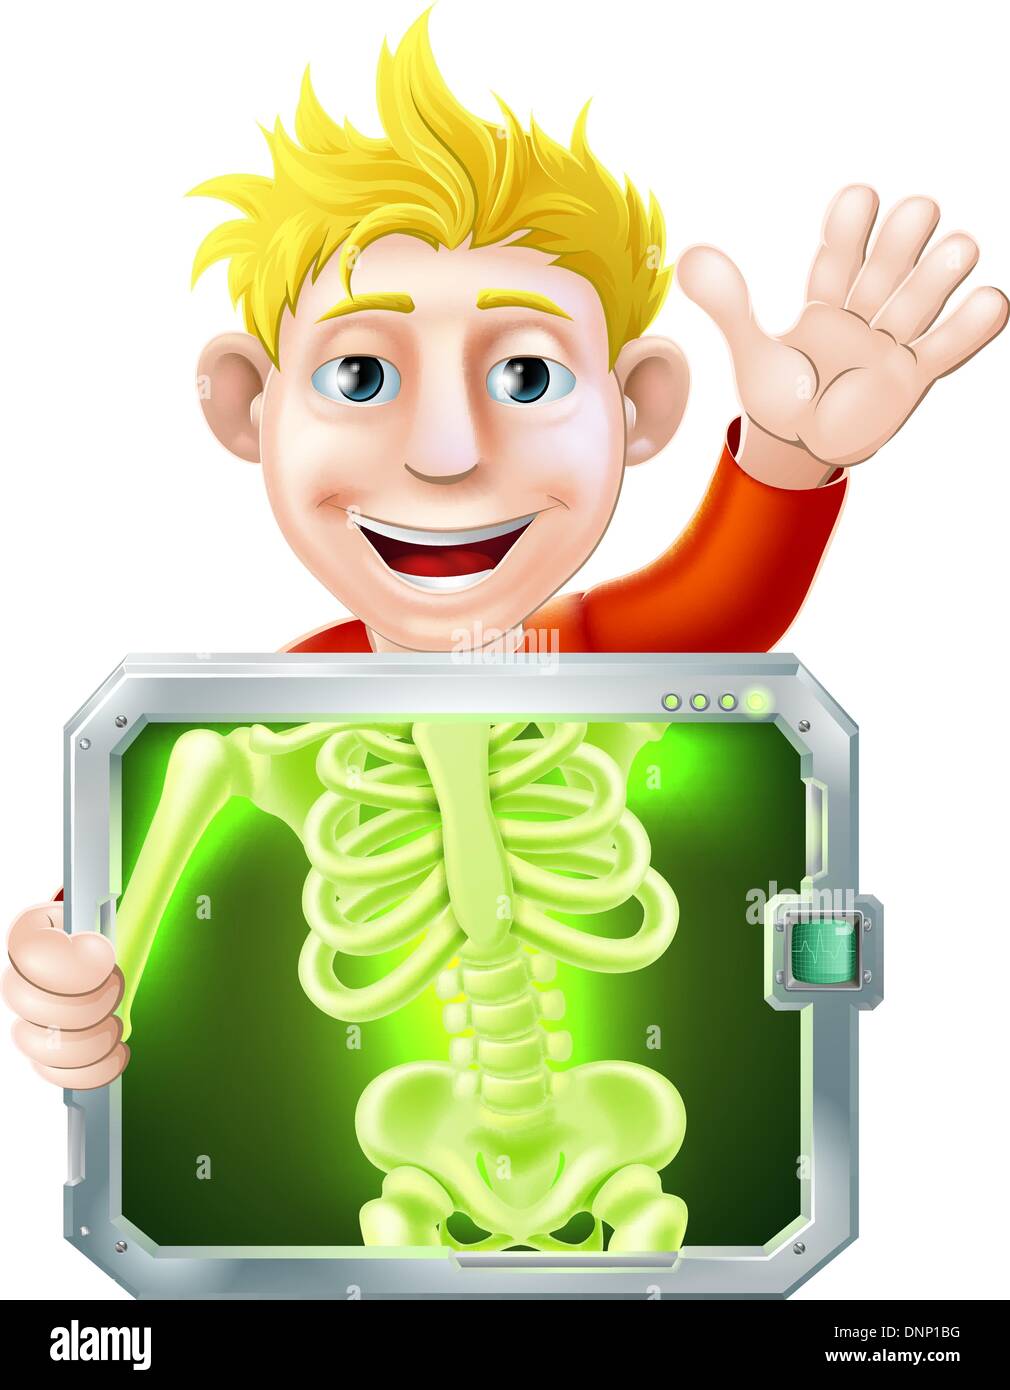 Illustrazione di un cartone animato uomo o bay ottenendo un medico x ray e agitando con la mano Illustrazione Vettoriale